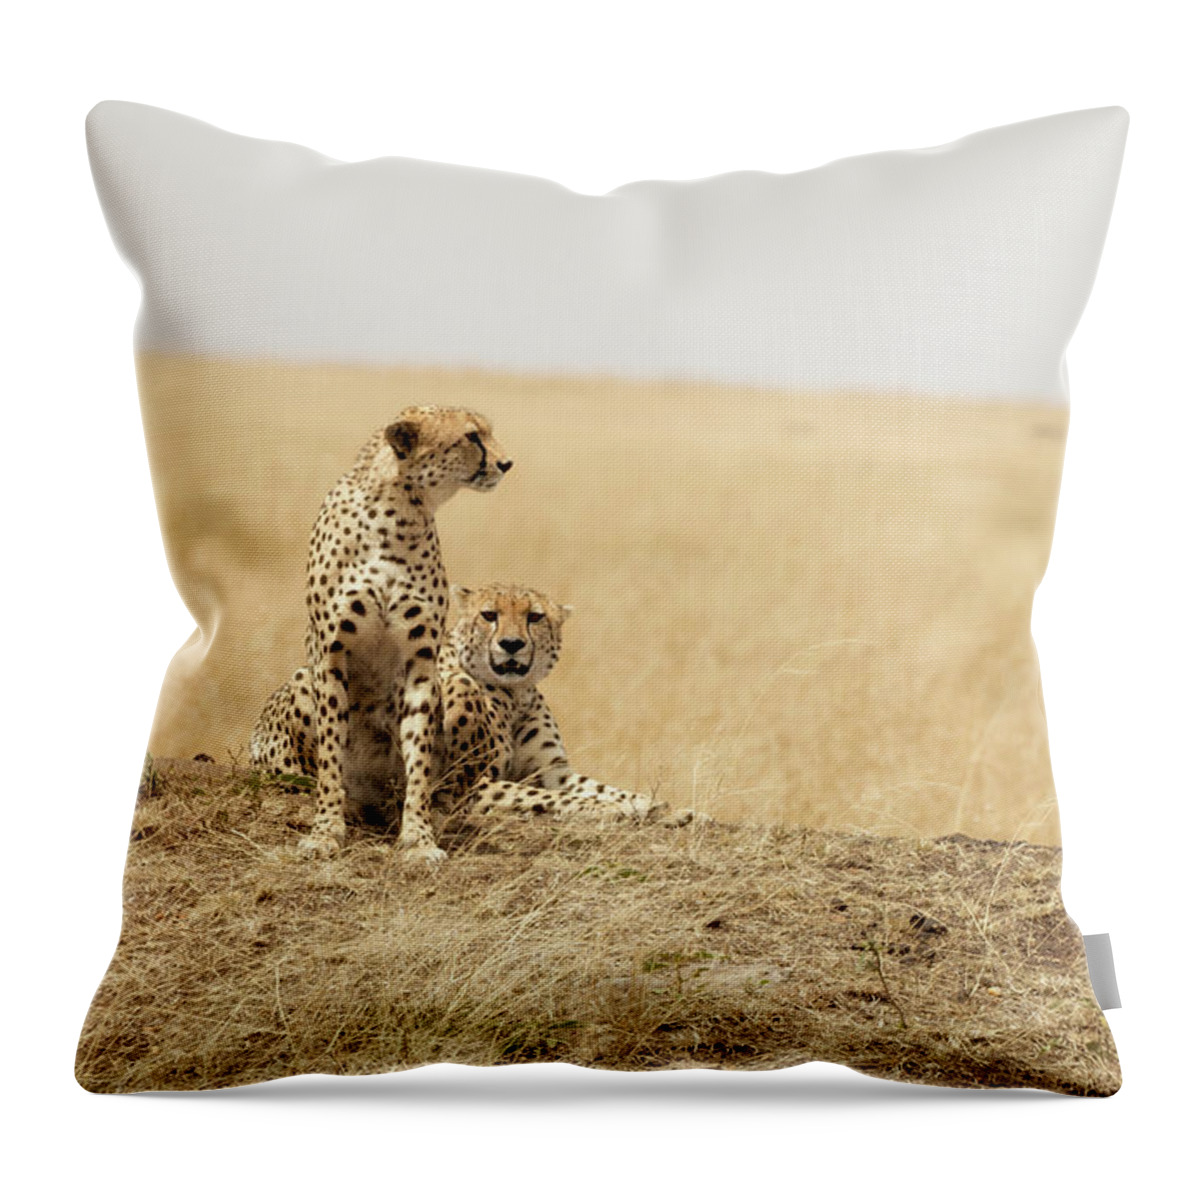 Africa Throw Pillow featuring the photograph Cheetah pair in the Masai Mara by Jane Rix